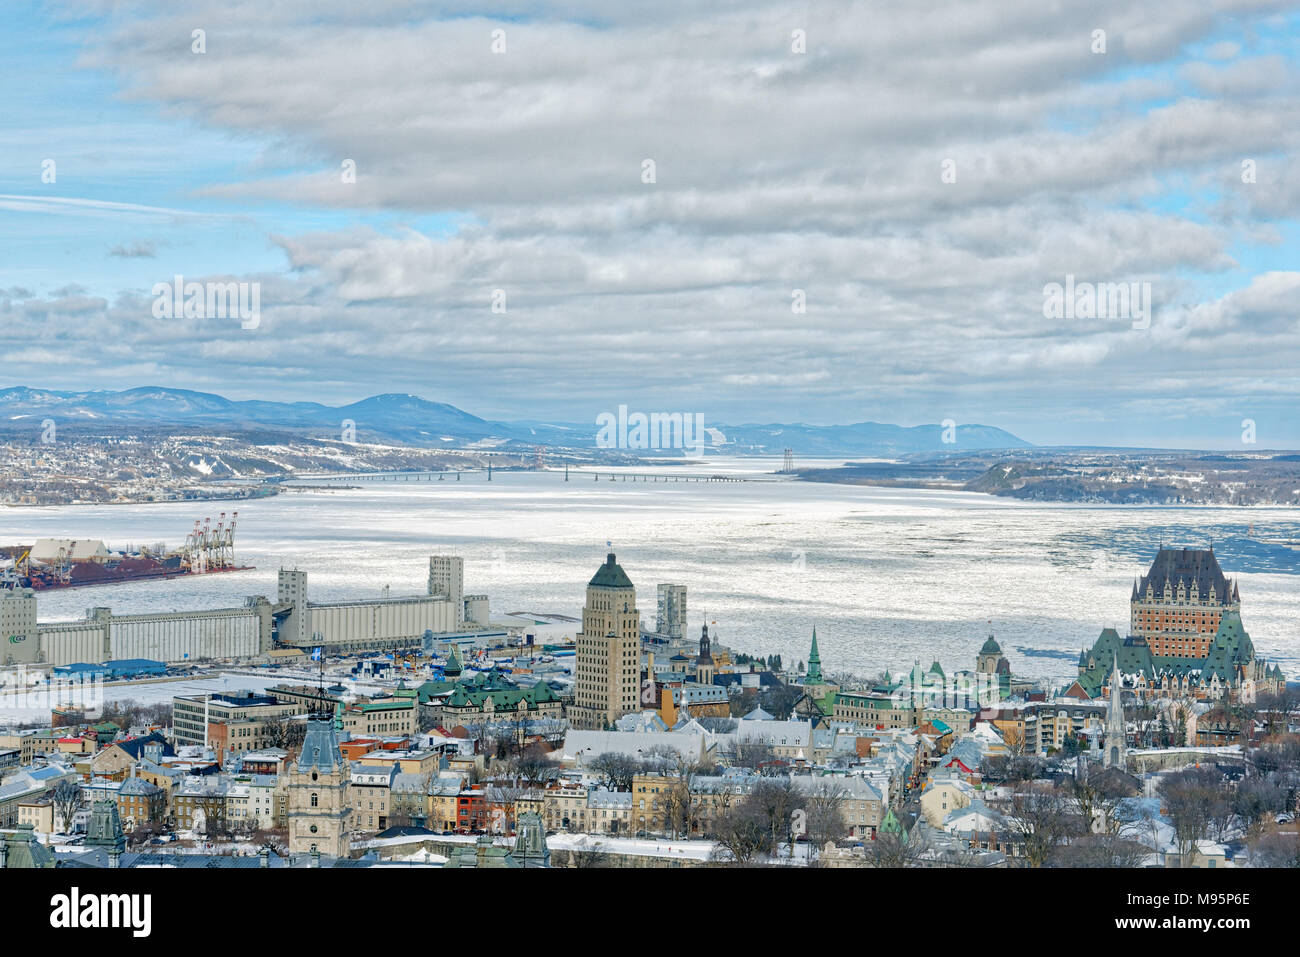 Une vue aérienne de la ville de Québec à partir de la ciel restaurant, avec le Château Frontenac et : Bâtiment avec le fleuve Saint-Laurent gelé beyon Banque D'Images